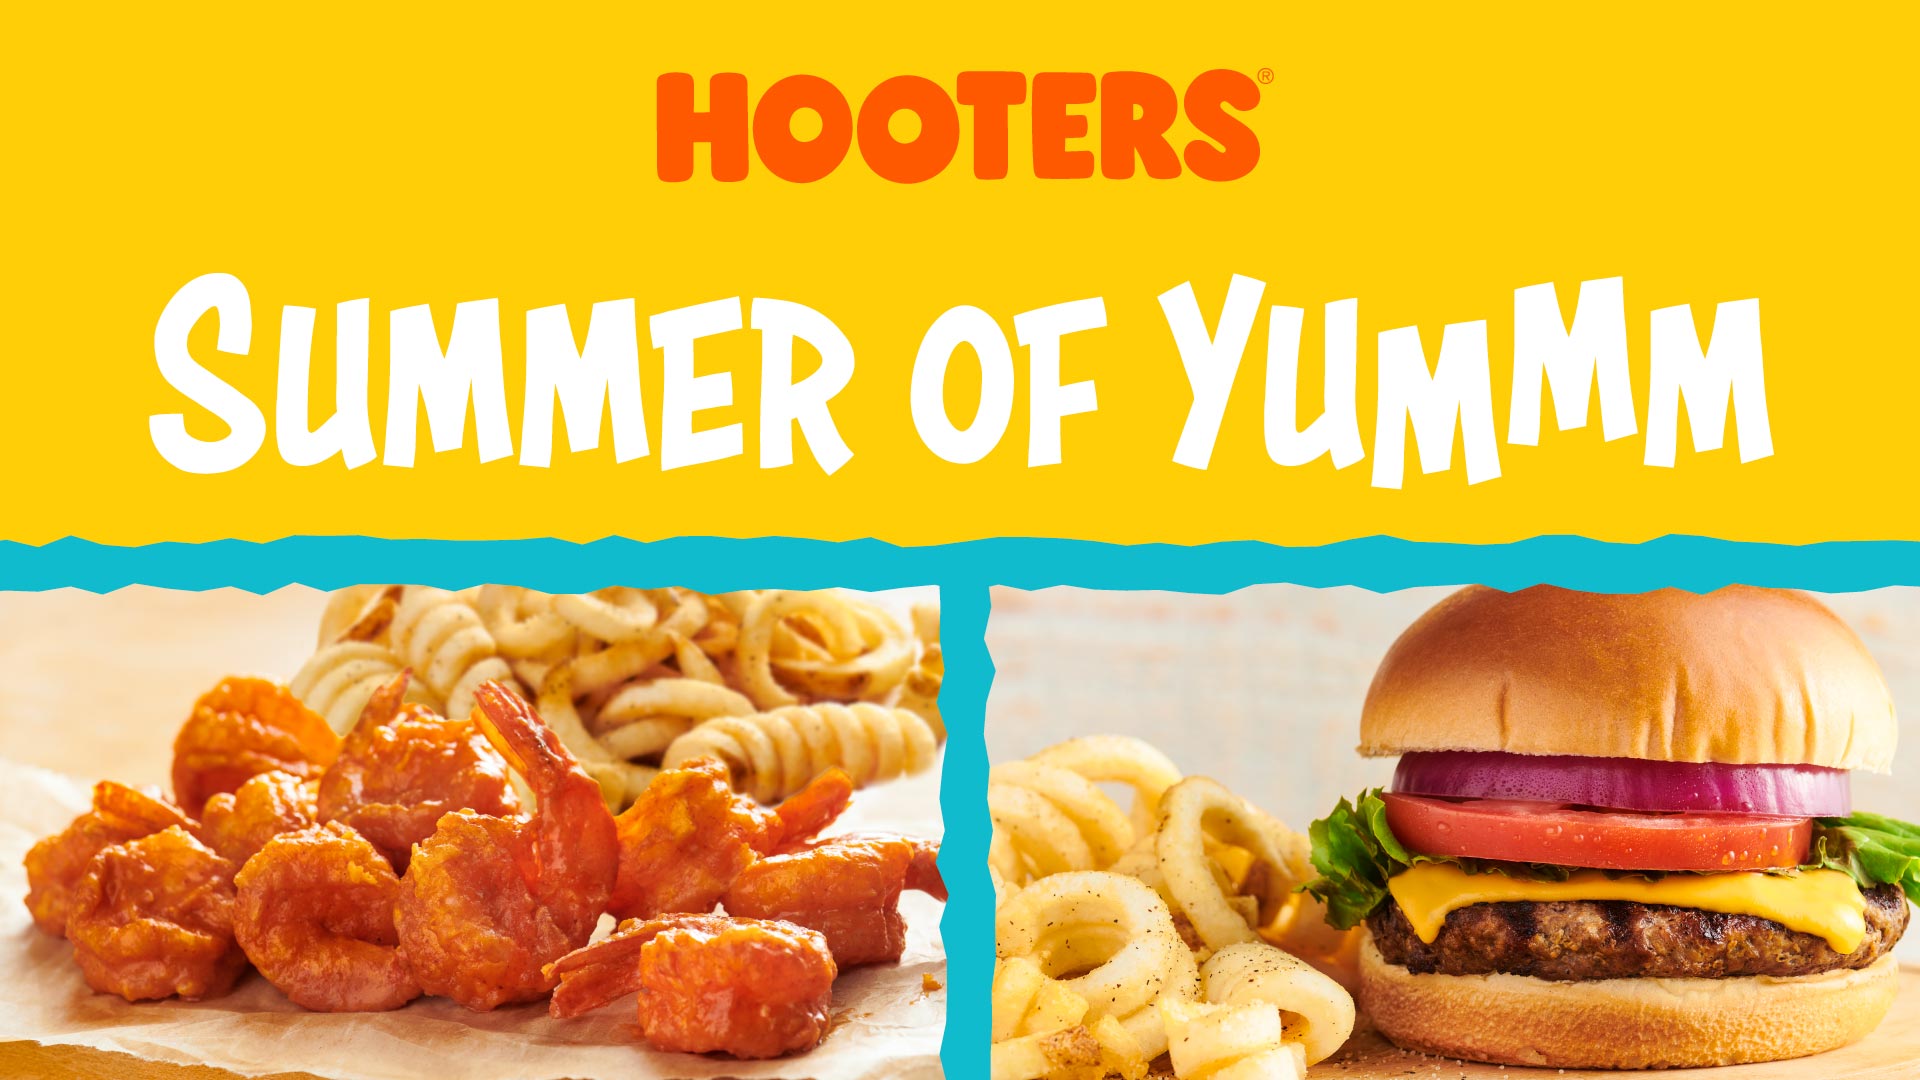 Hooters Summer of Yummm